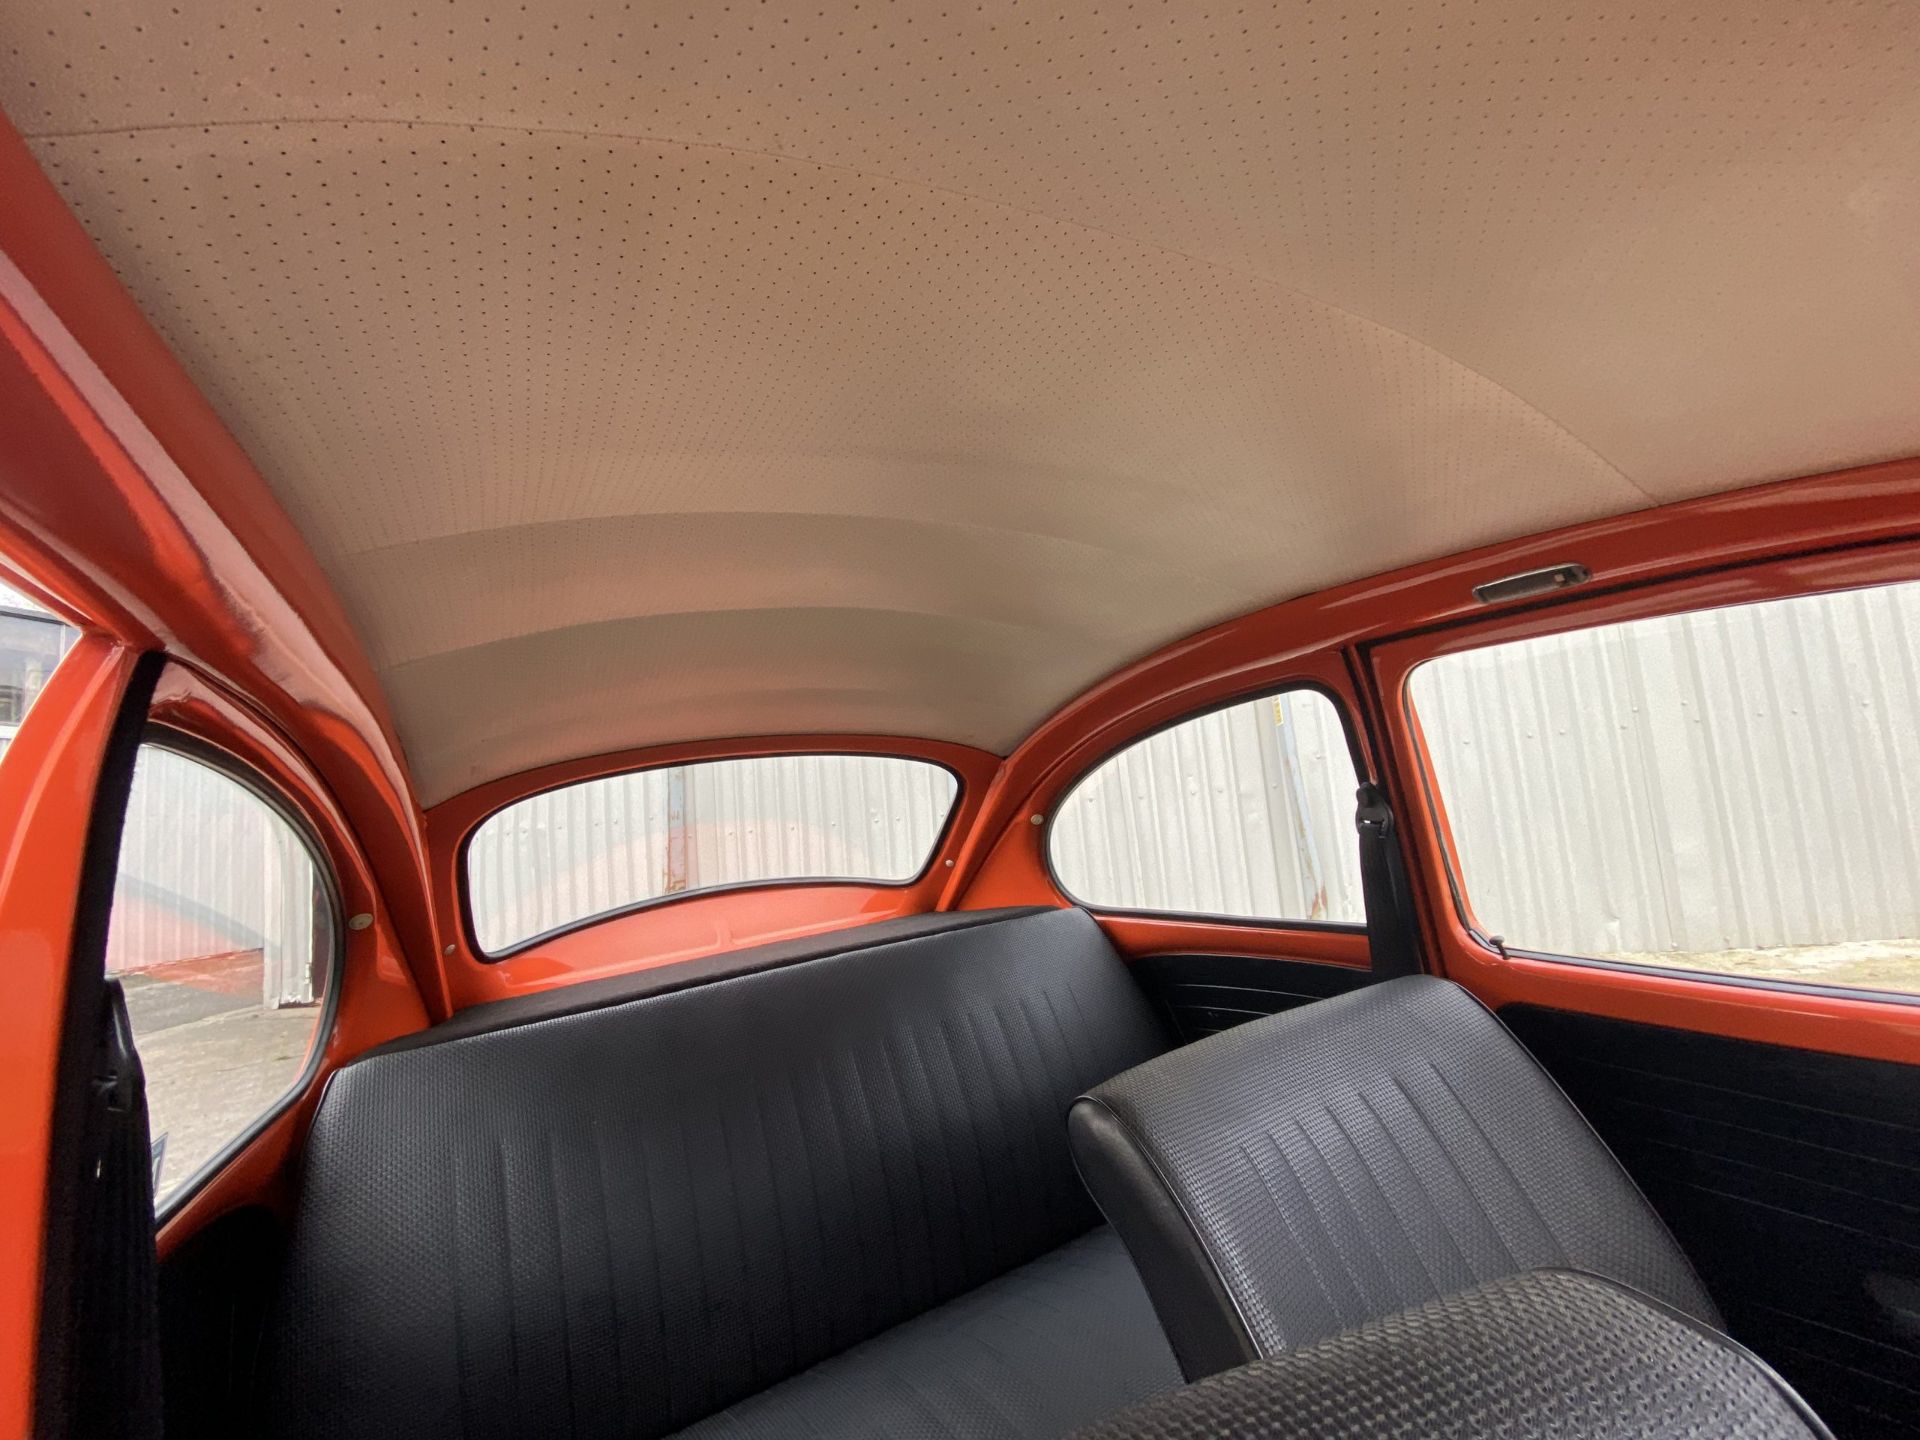 Volkswagen Beetle - Image 35 of 51